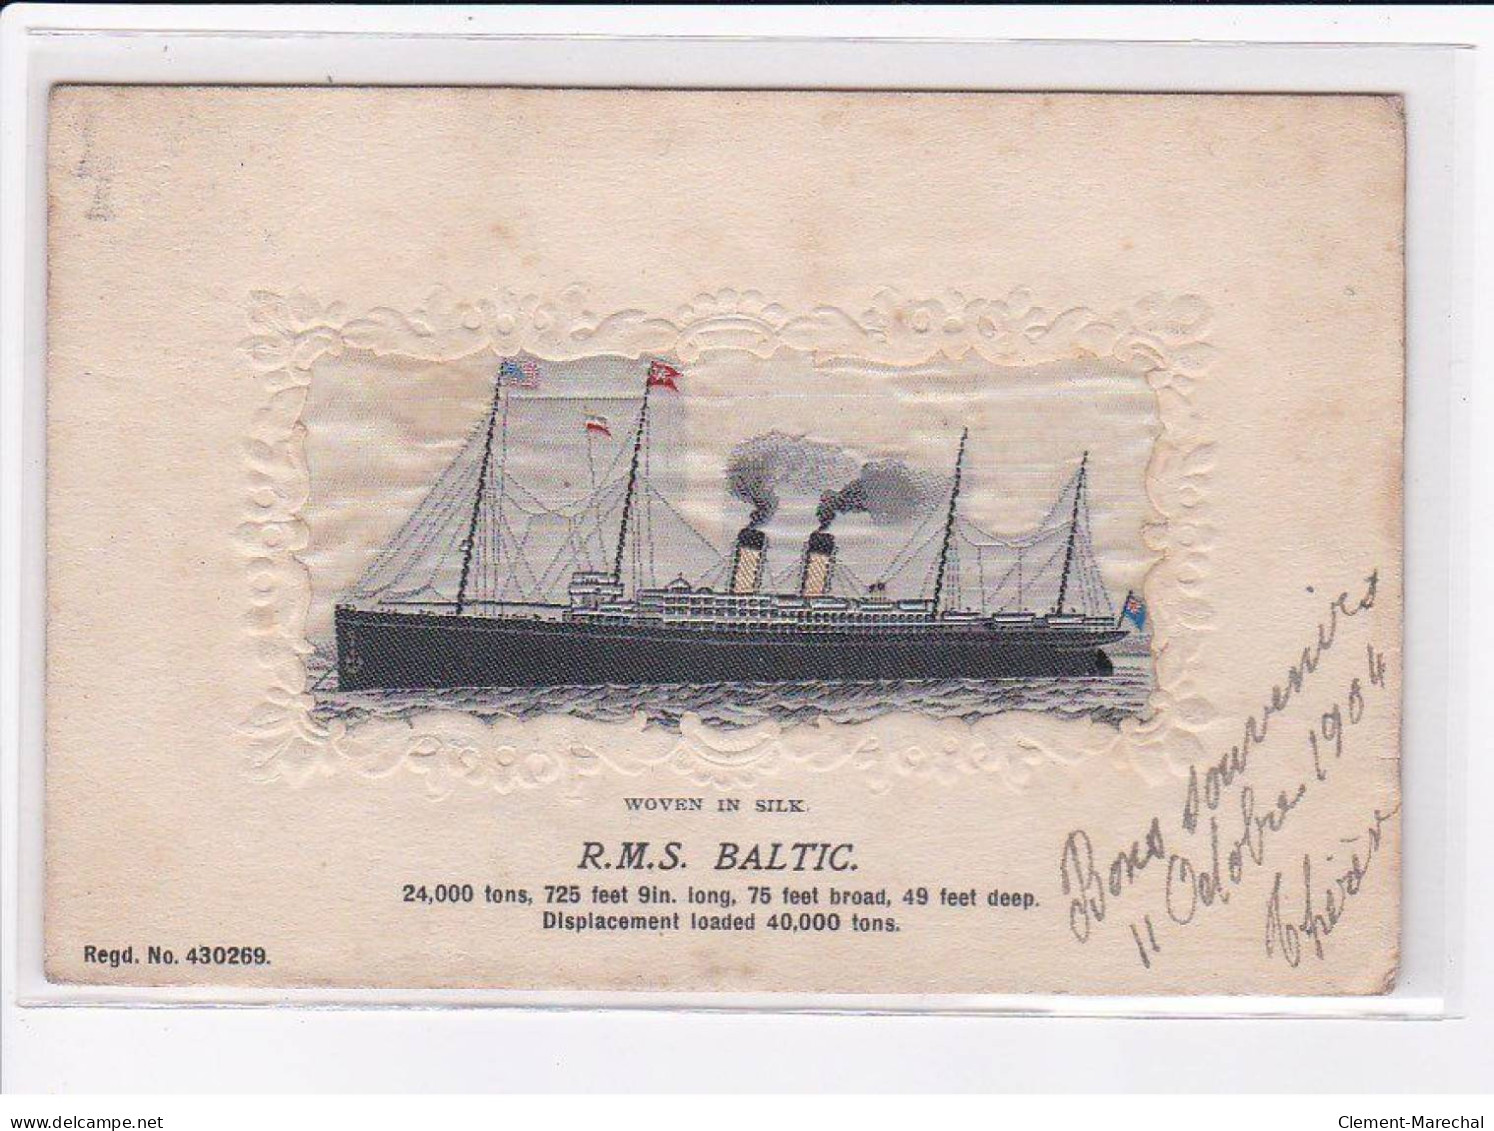 BATEAUX : Carte Sur Soie Du Paquebot RMS BALTIC (embored - Brodée)- Très Bon état - Paquebots